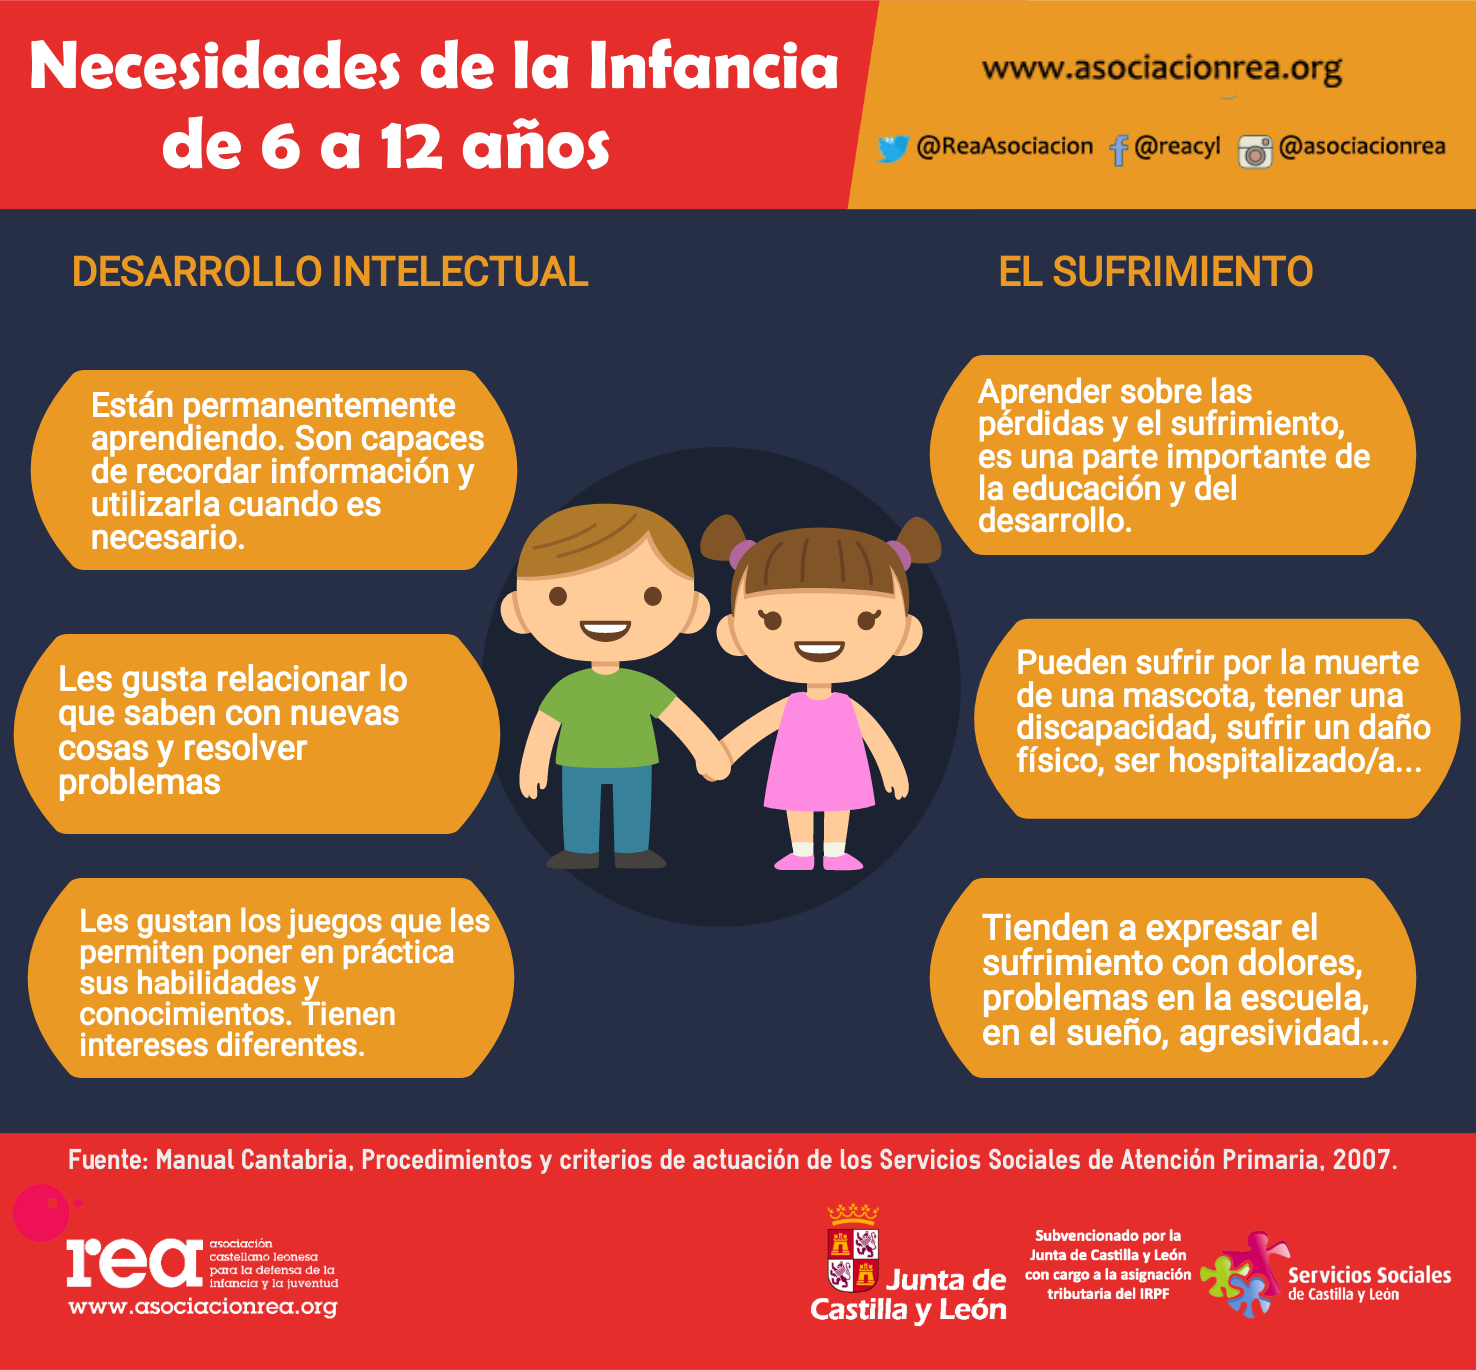 Necesidades infancia de los 6 a los 12 años: Desarrollo Intelectual Asociación REA